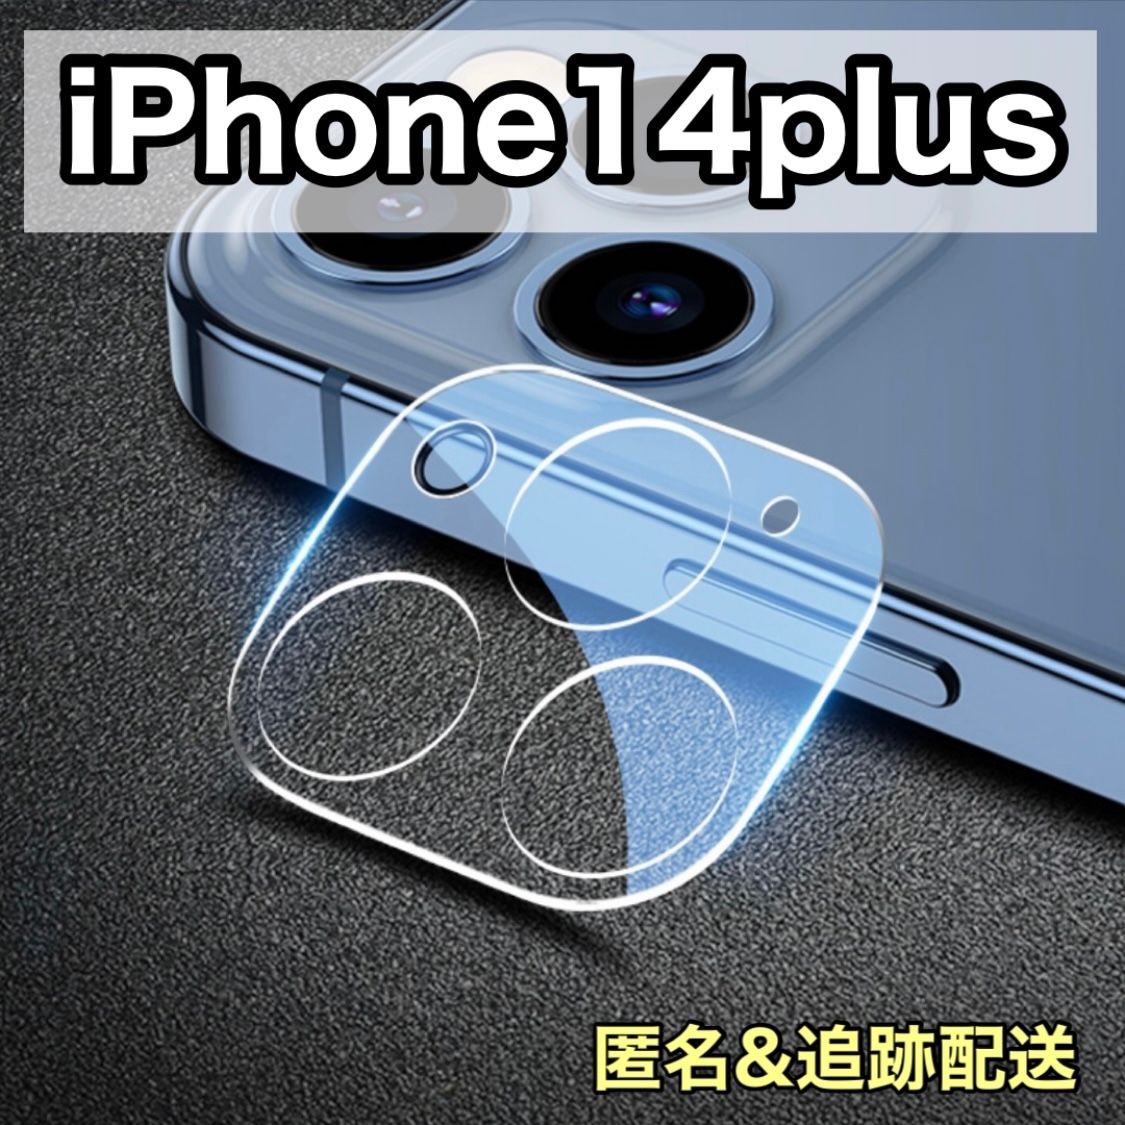 メルカリShops - iPhone 14plus 透明カメラフィルム✨カメラカバー レンズ保護